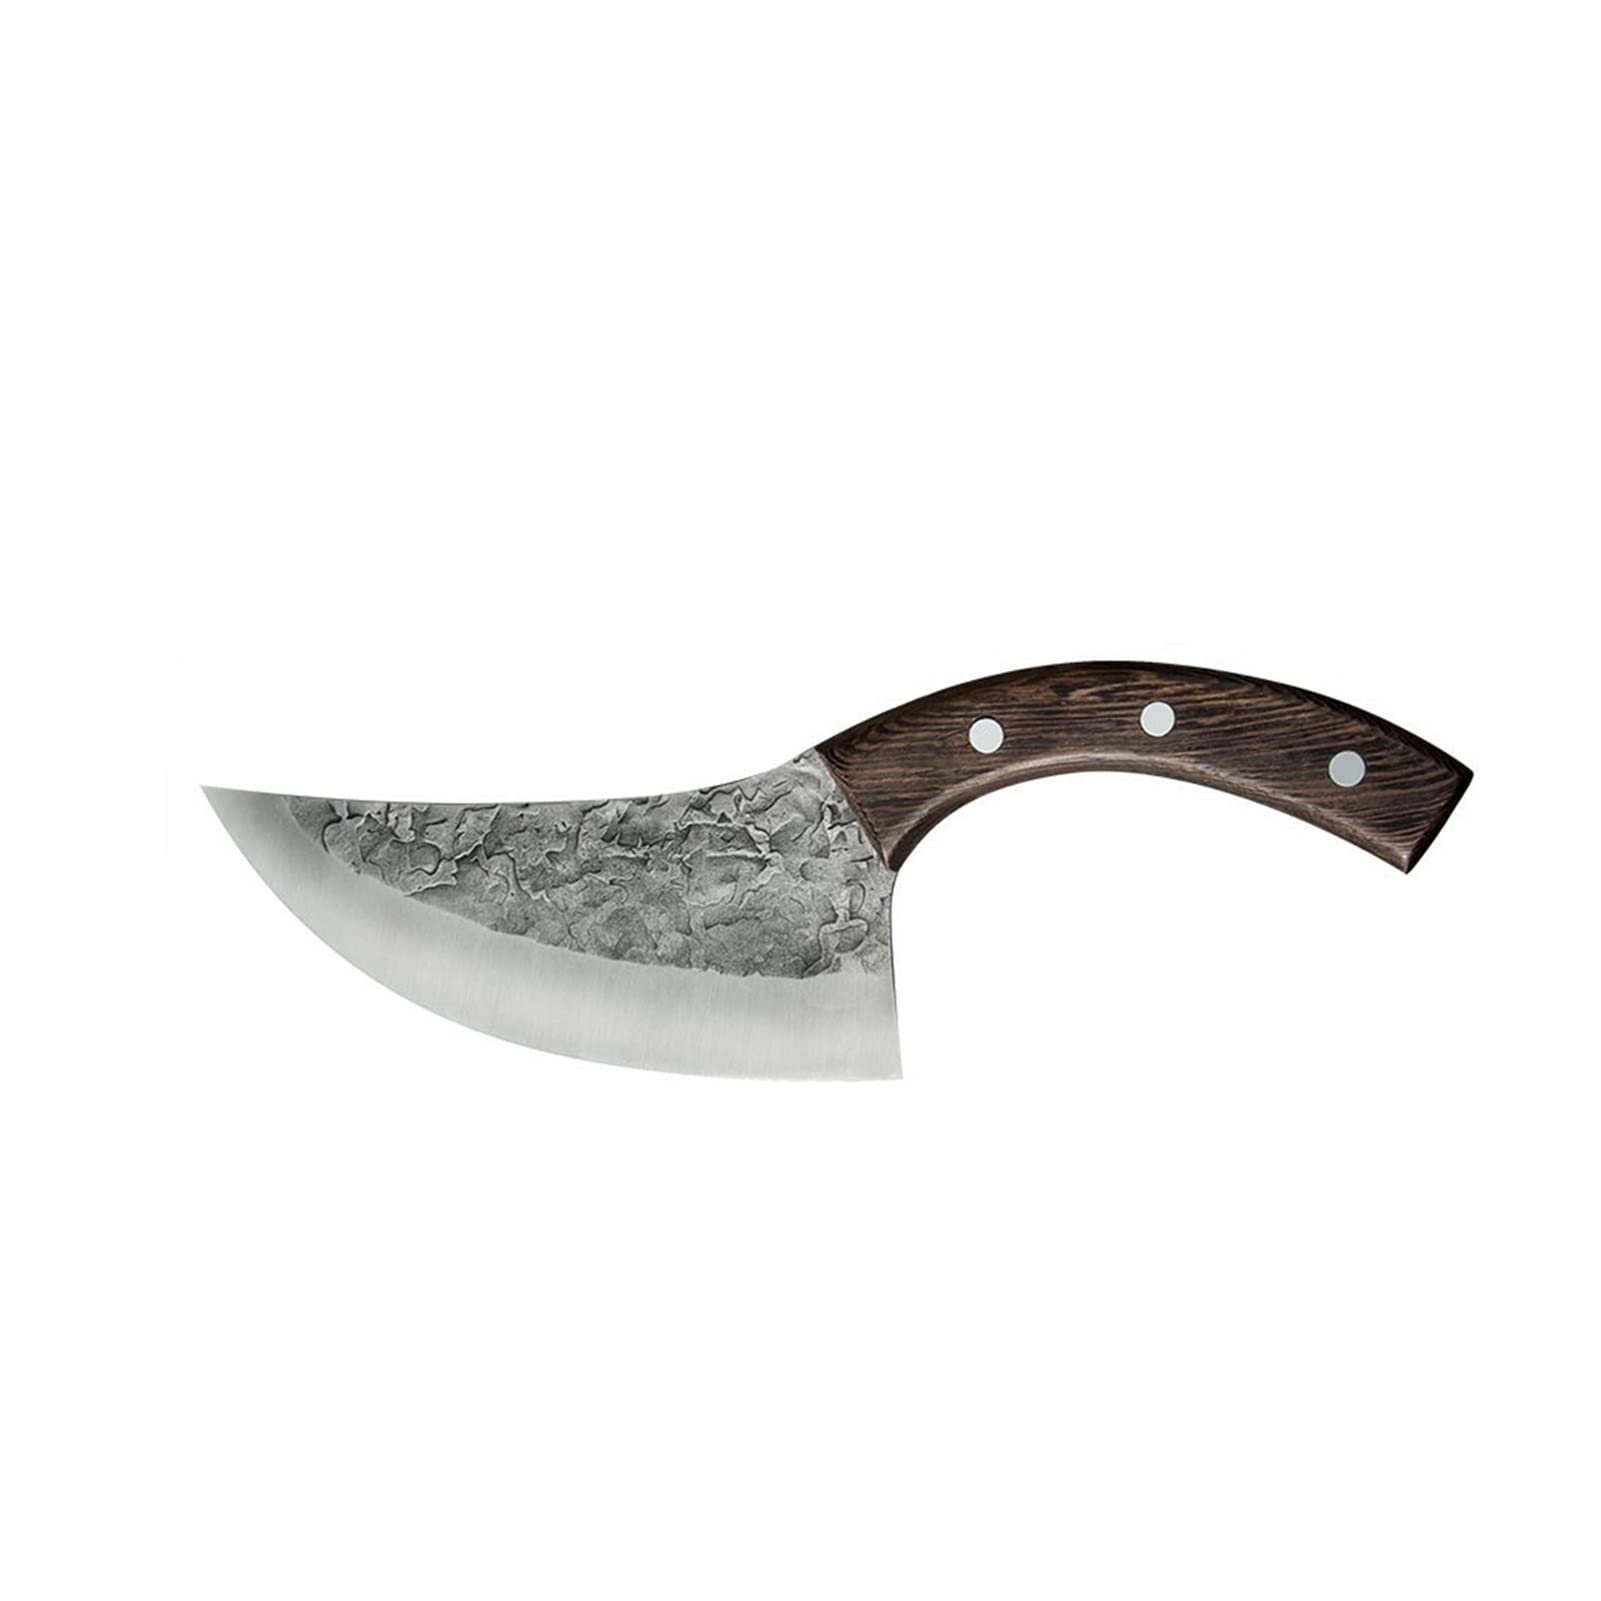 6 "handgefertigtes geschmiedetes Boning -Messer serbischer Metzgermesser Edelstahl Chef Messer Messer Küchendmesser Jagd Fleischmesser küchenmesser set (Kitchen Knife Size : 6 inch)